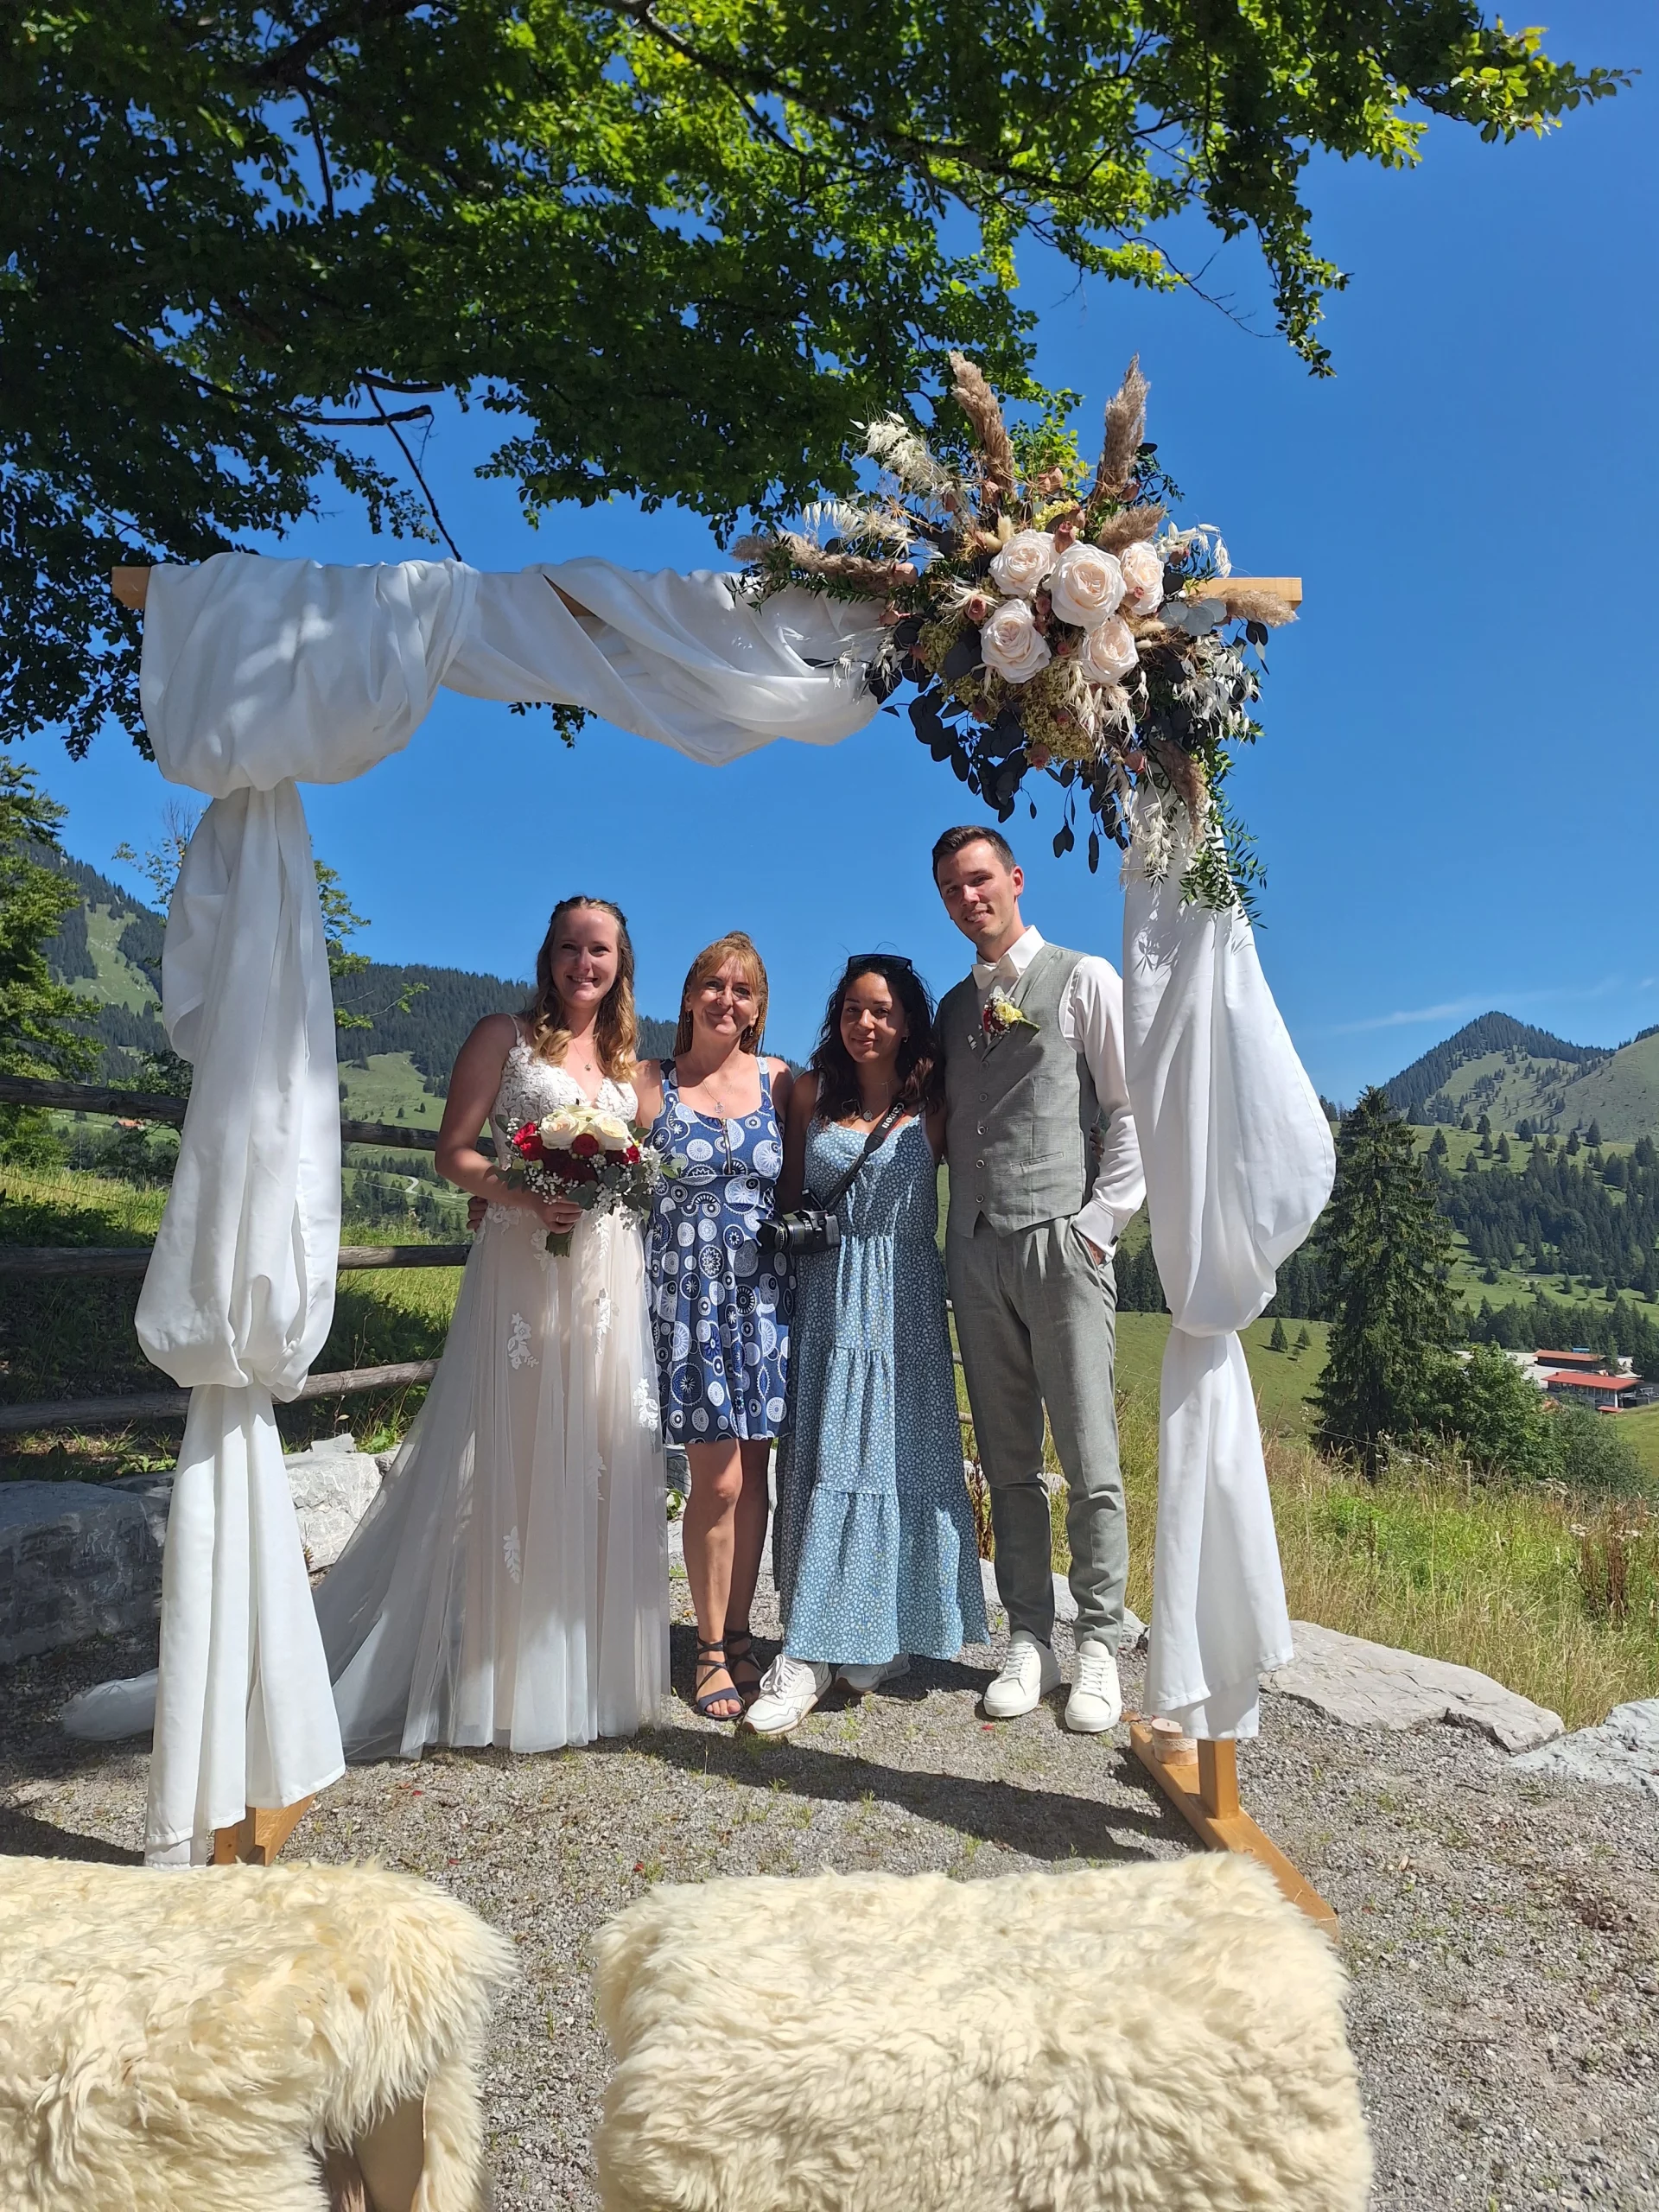 freie Trauung in den Bergen<br />
Traurednerin<br />
Hochzeitsfotografin